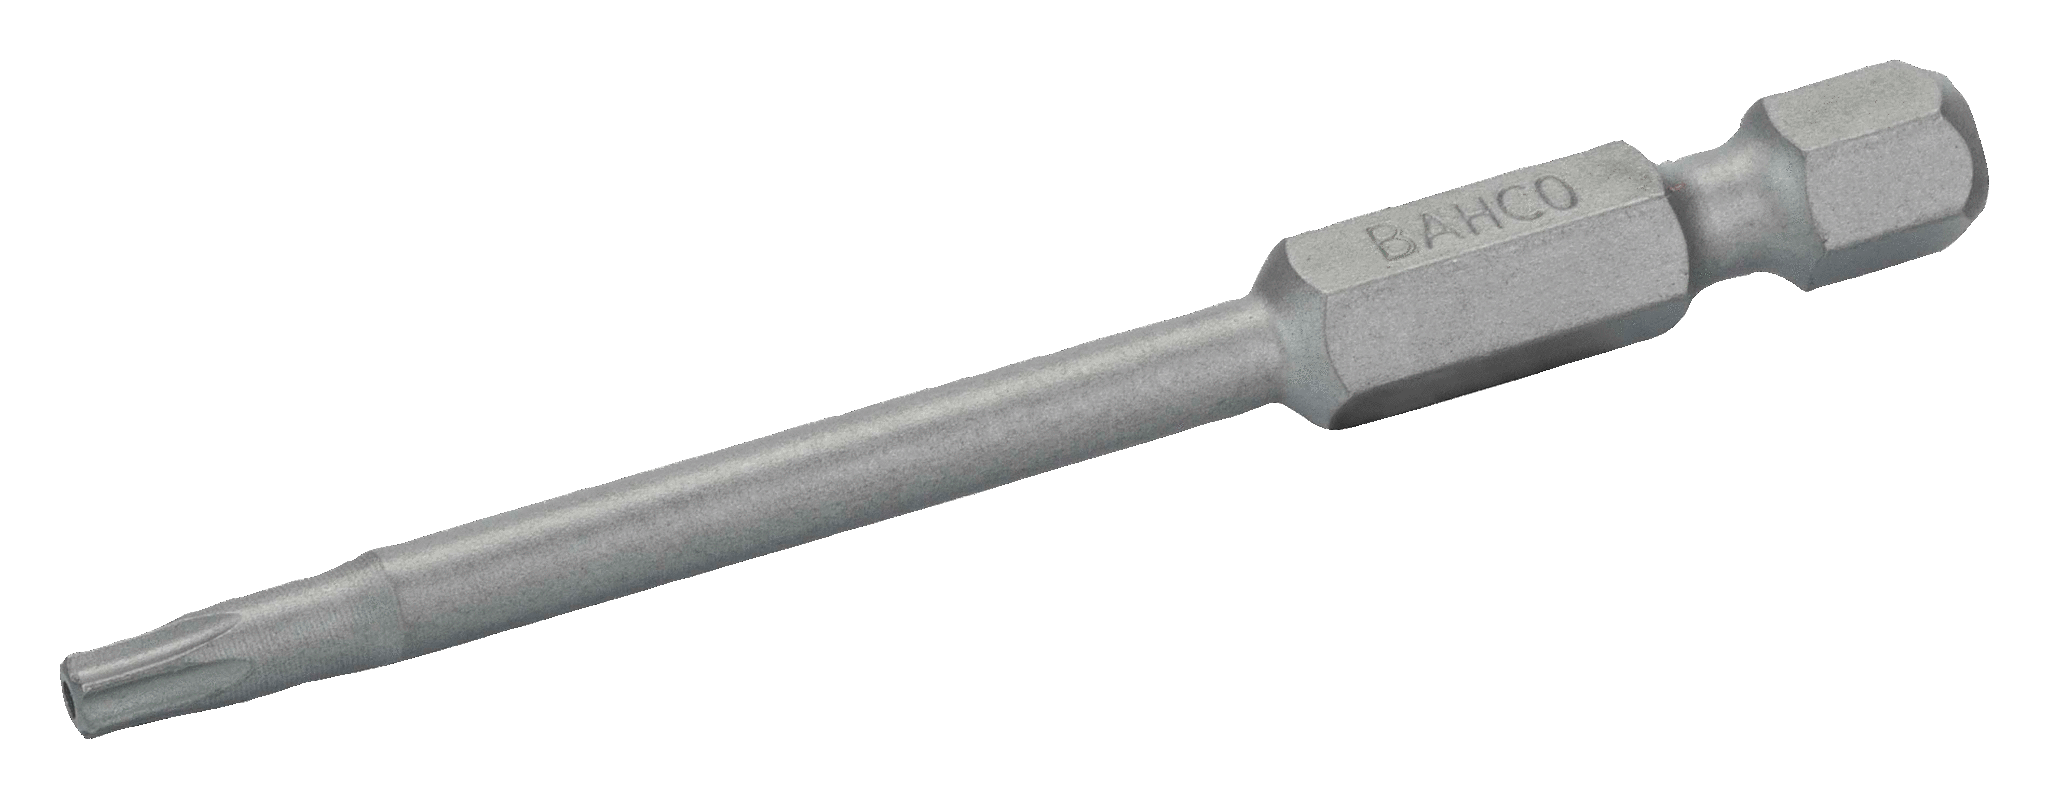 картинка Стандартные биты для отверток Torx® TR, 70 мм BAHCO 59S/70TR30-2P от магазина "Элит-инструмент"